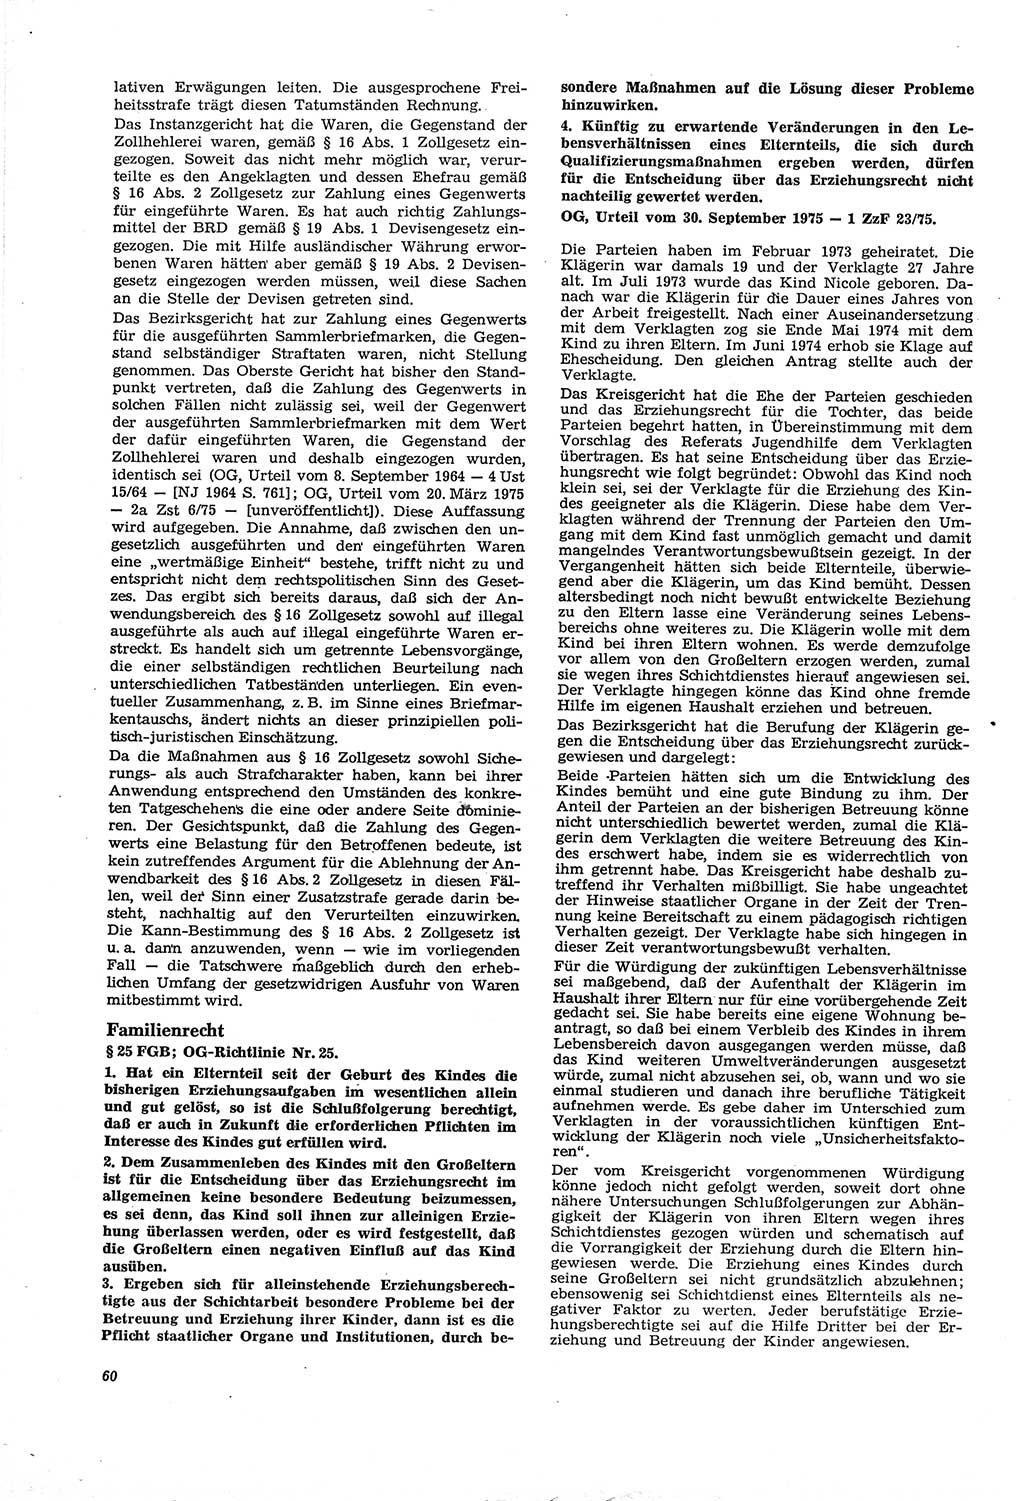 Neue Justiz (NJ), Zeitschrift für Recht und Rechtswissenschaft [Deutsche Demokratische Republik (DDR)], 30. Jahrgang 1976, Seite 60 (NJ DDR 1976, S. 60)